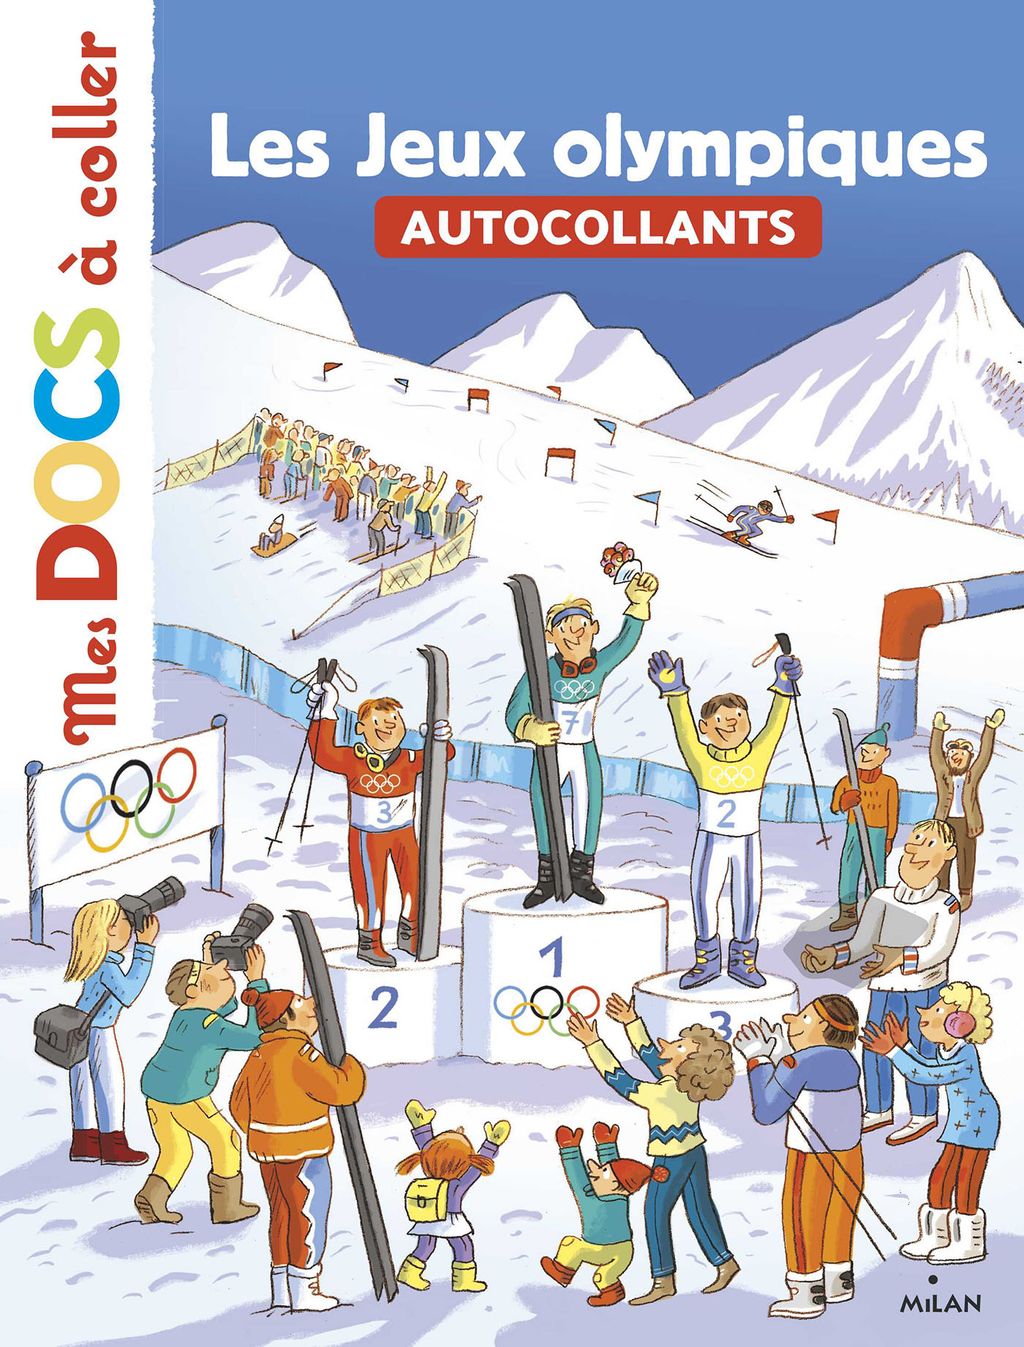 « Les Jeux olympiques » cover